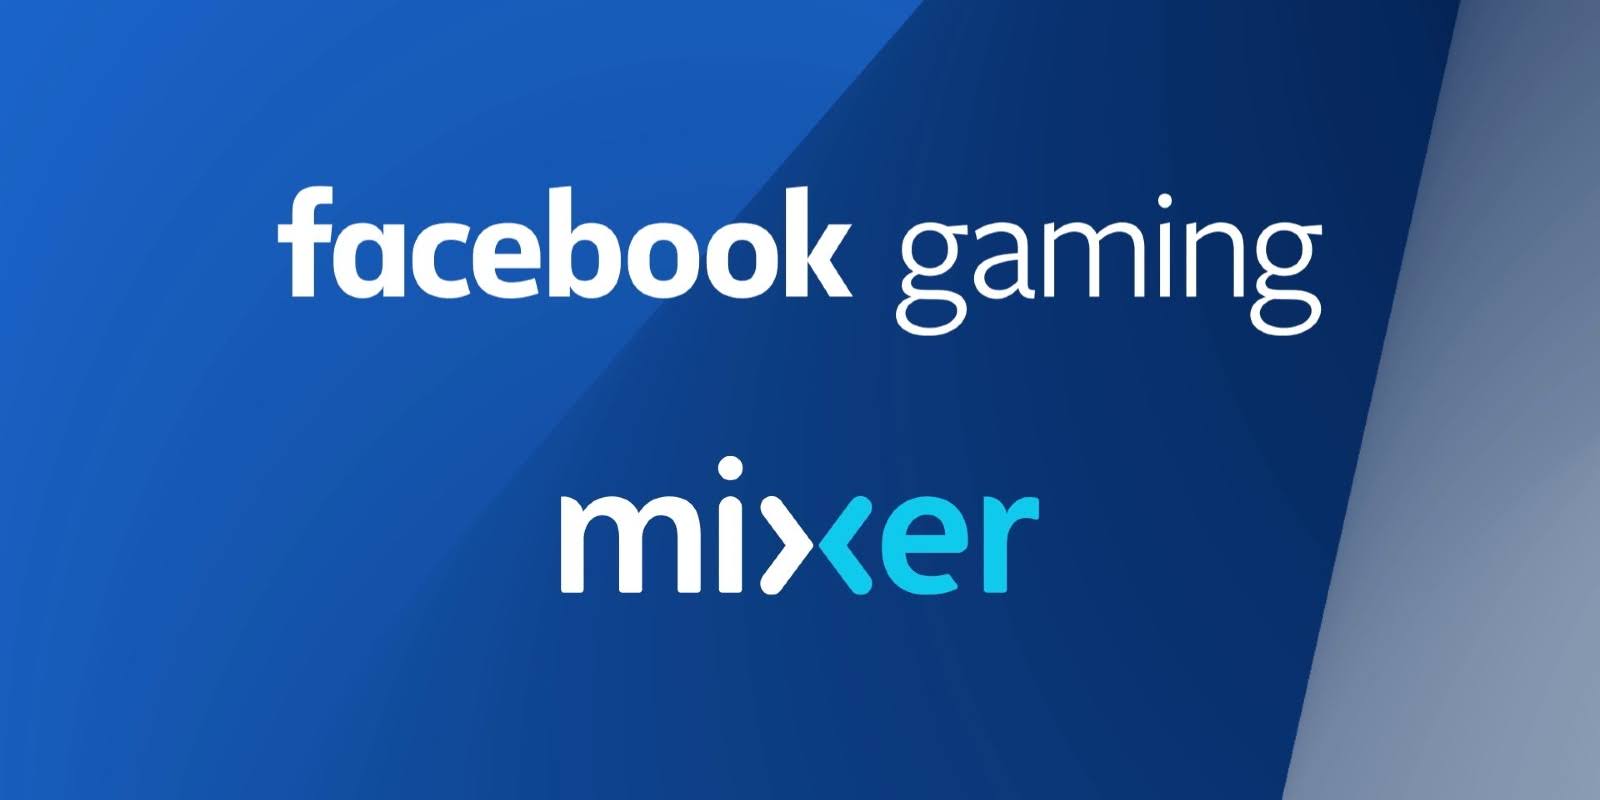 microsoft-umumkan-kerja-samanya-dengan-facebook-gaming-mixer-otw-tutup